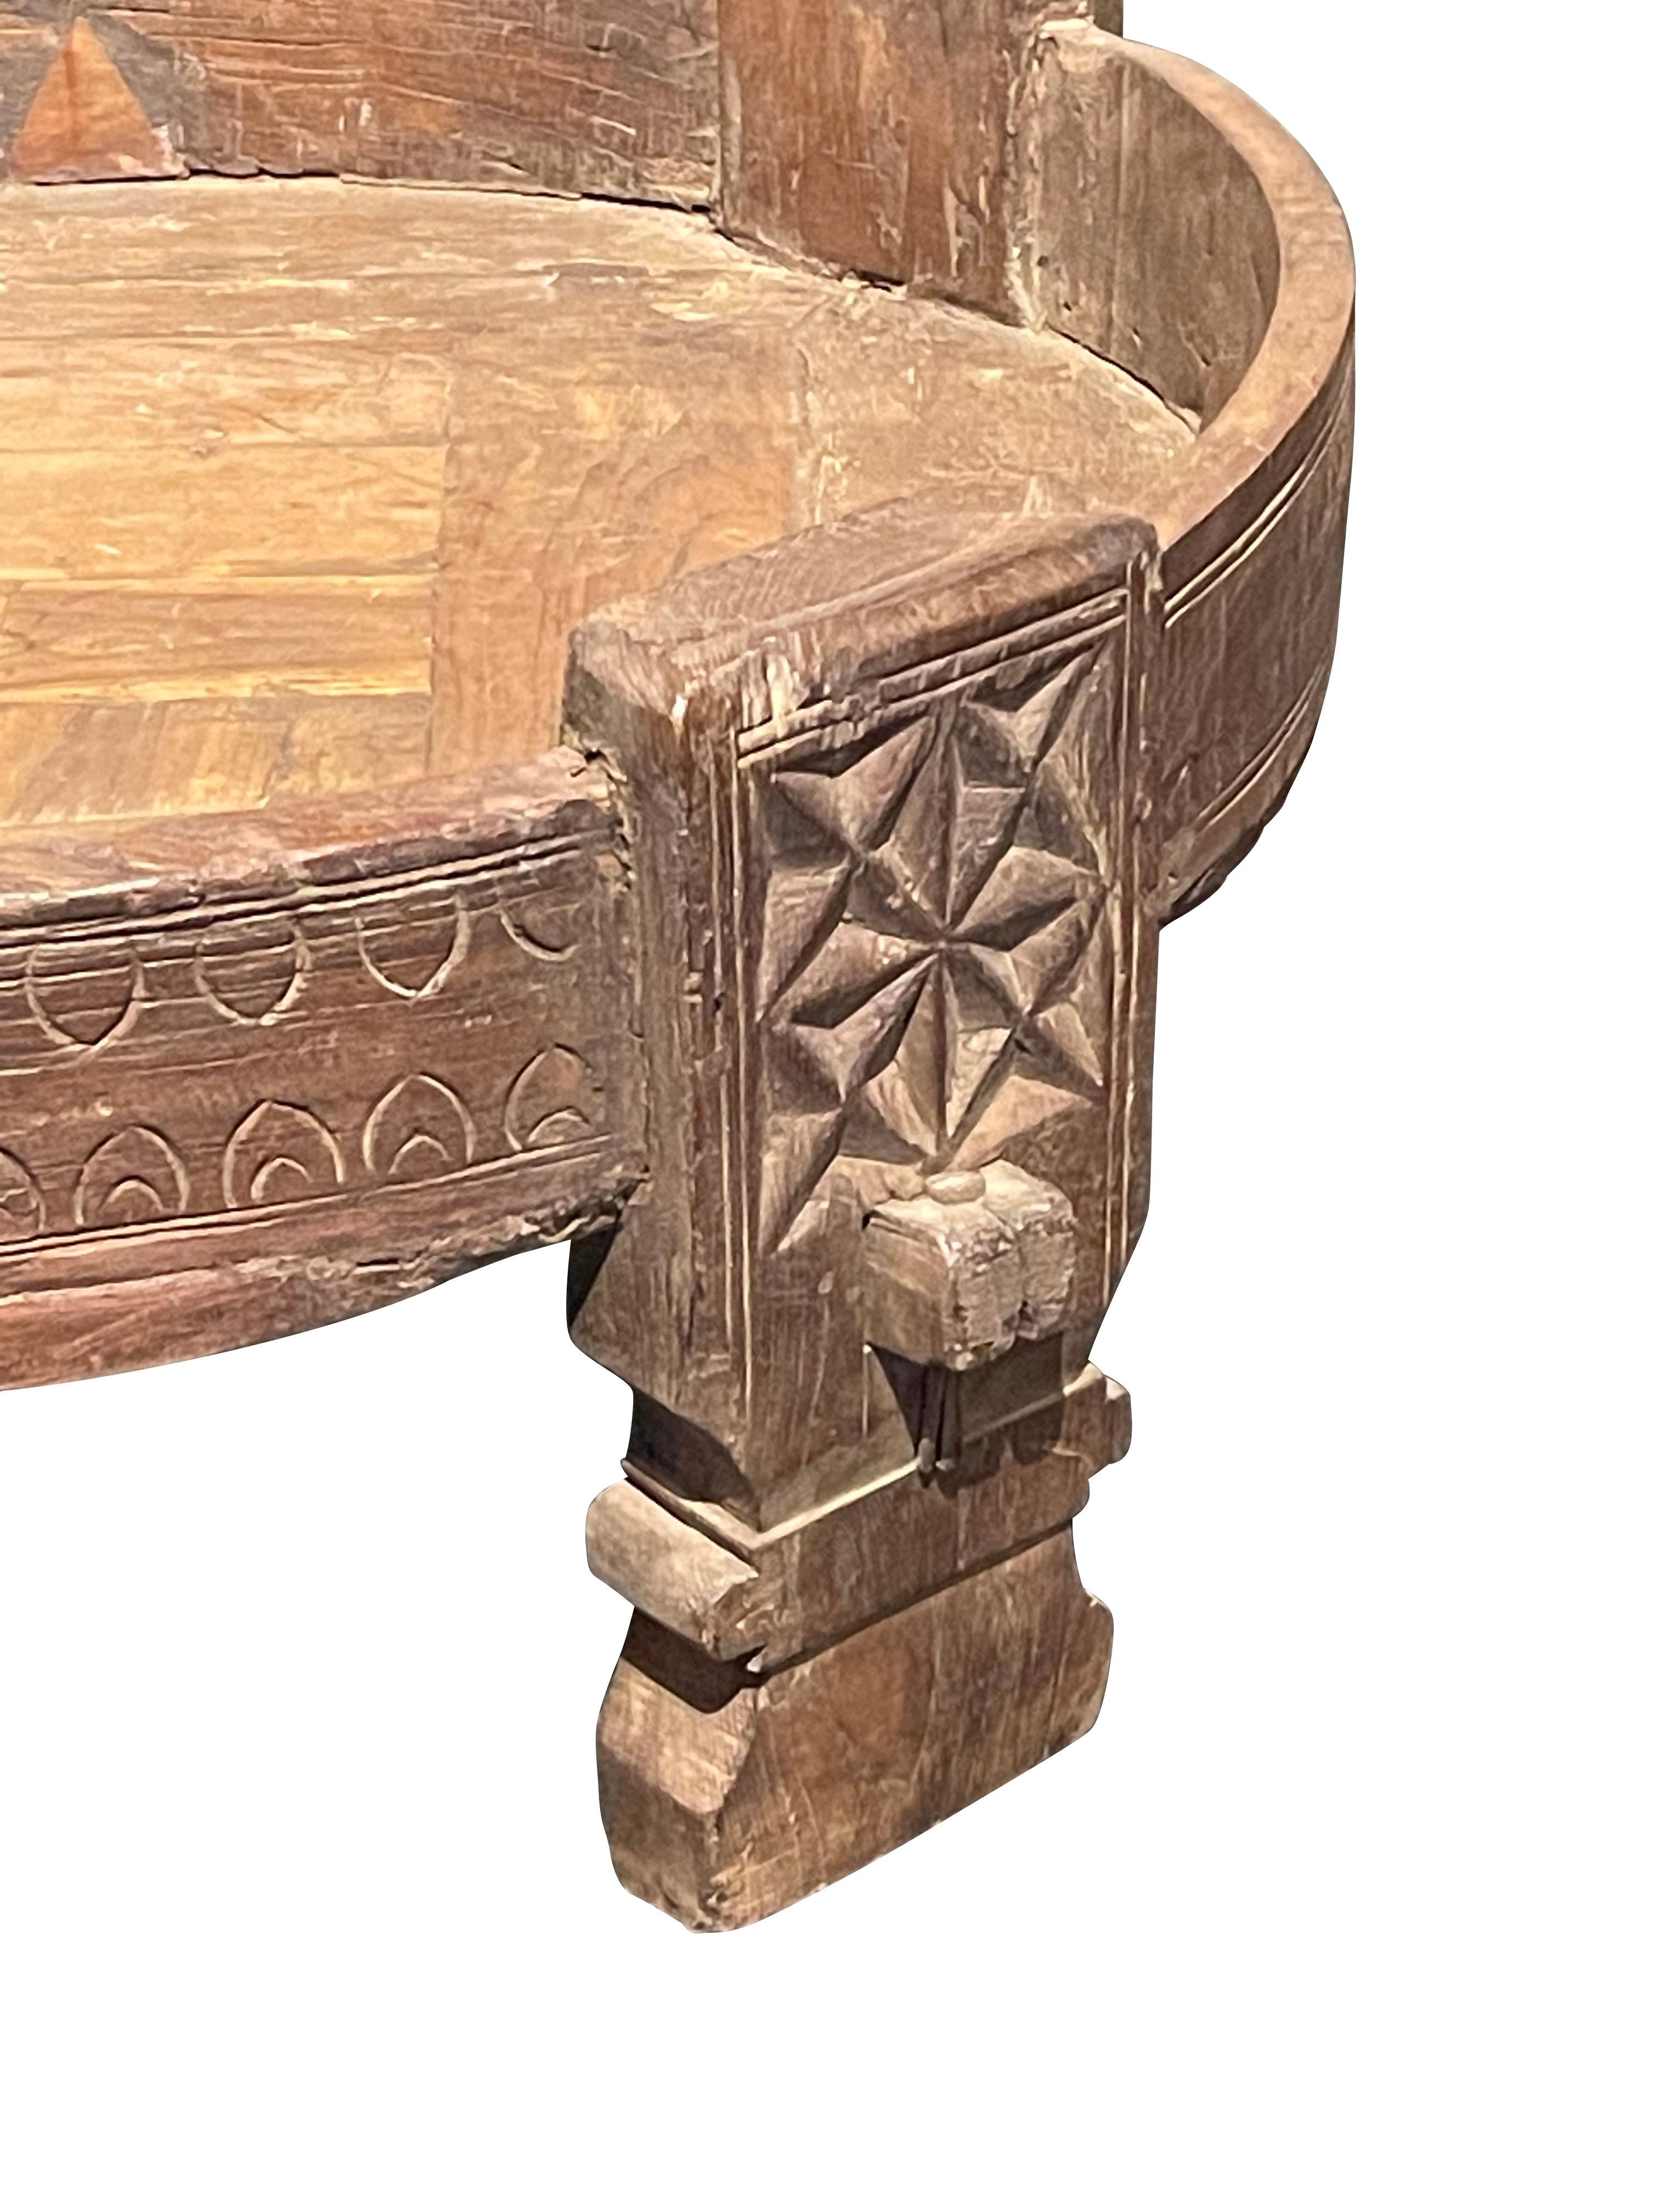 Indische große, runde Holzschale mit Fuß aus dem 19. Jahrhundert.
Bügelbesatz.
Vier Beine.
Dekorative Schnitzereien an den Beinen und an der Außenseite der Schale.